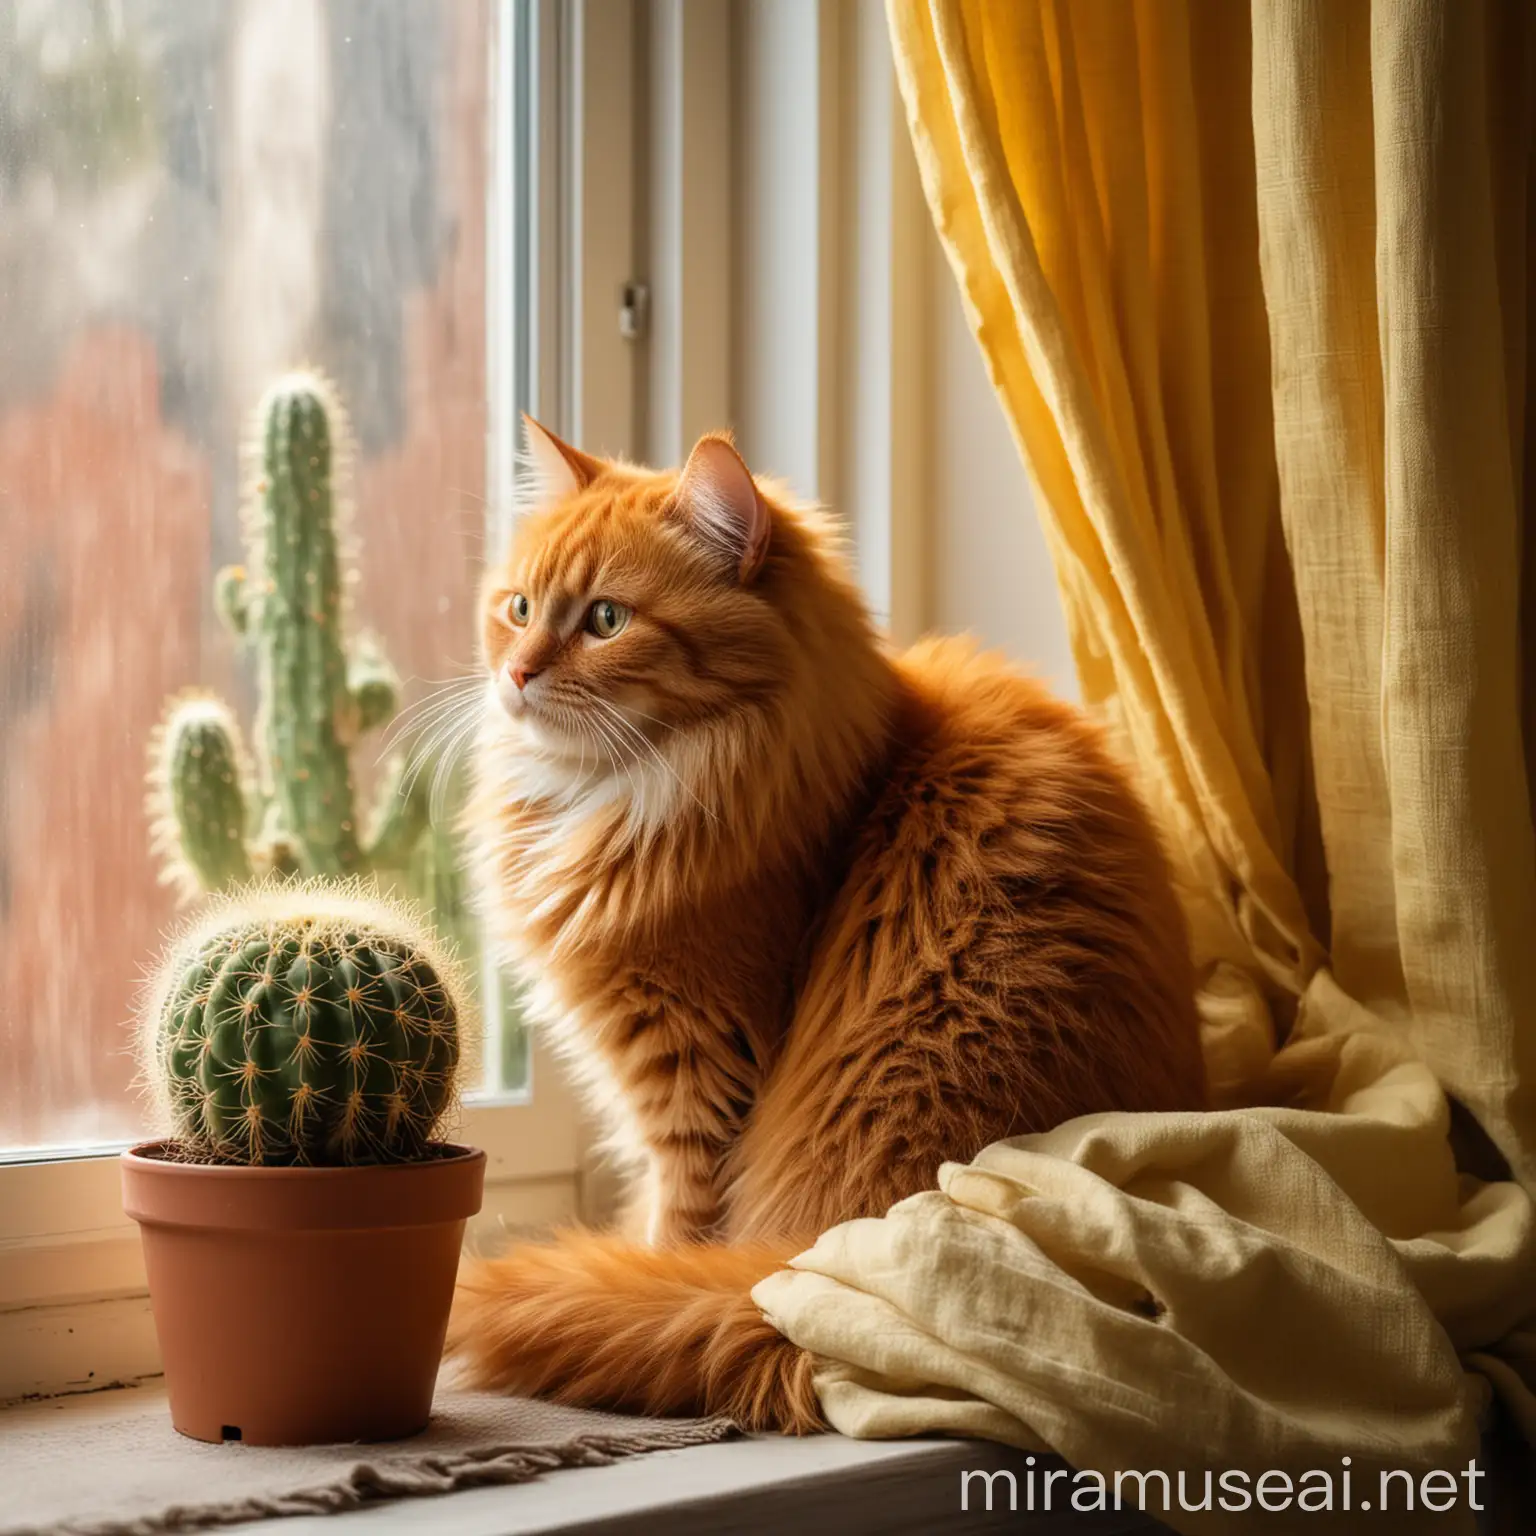 пушистый рыжий кот сидит рядом с кактусом на подоконнике у окна. Занавески насыщенного желтого цвета